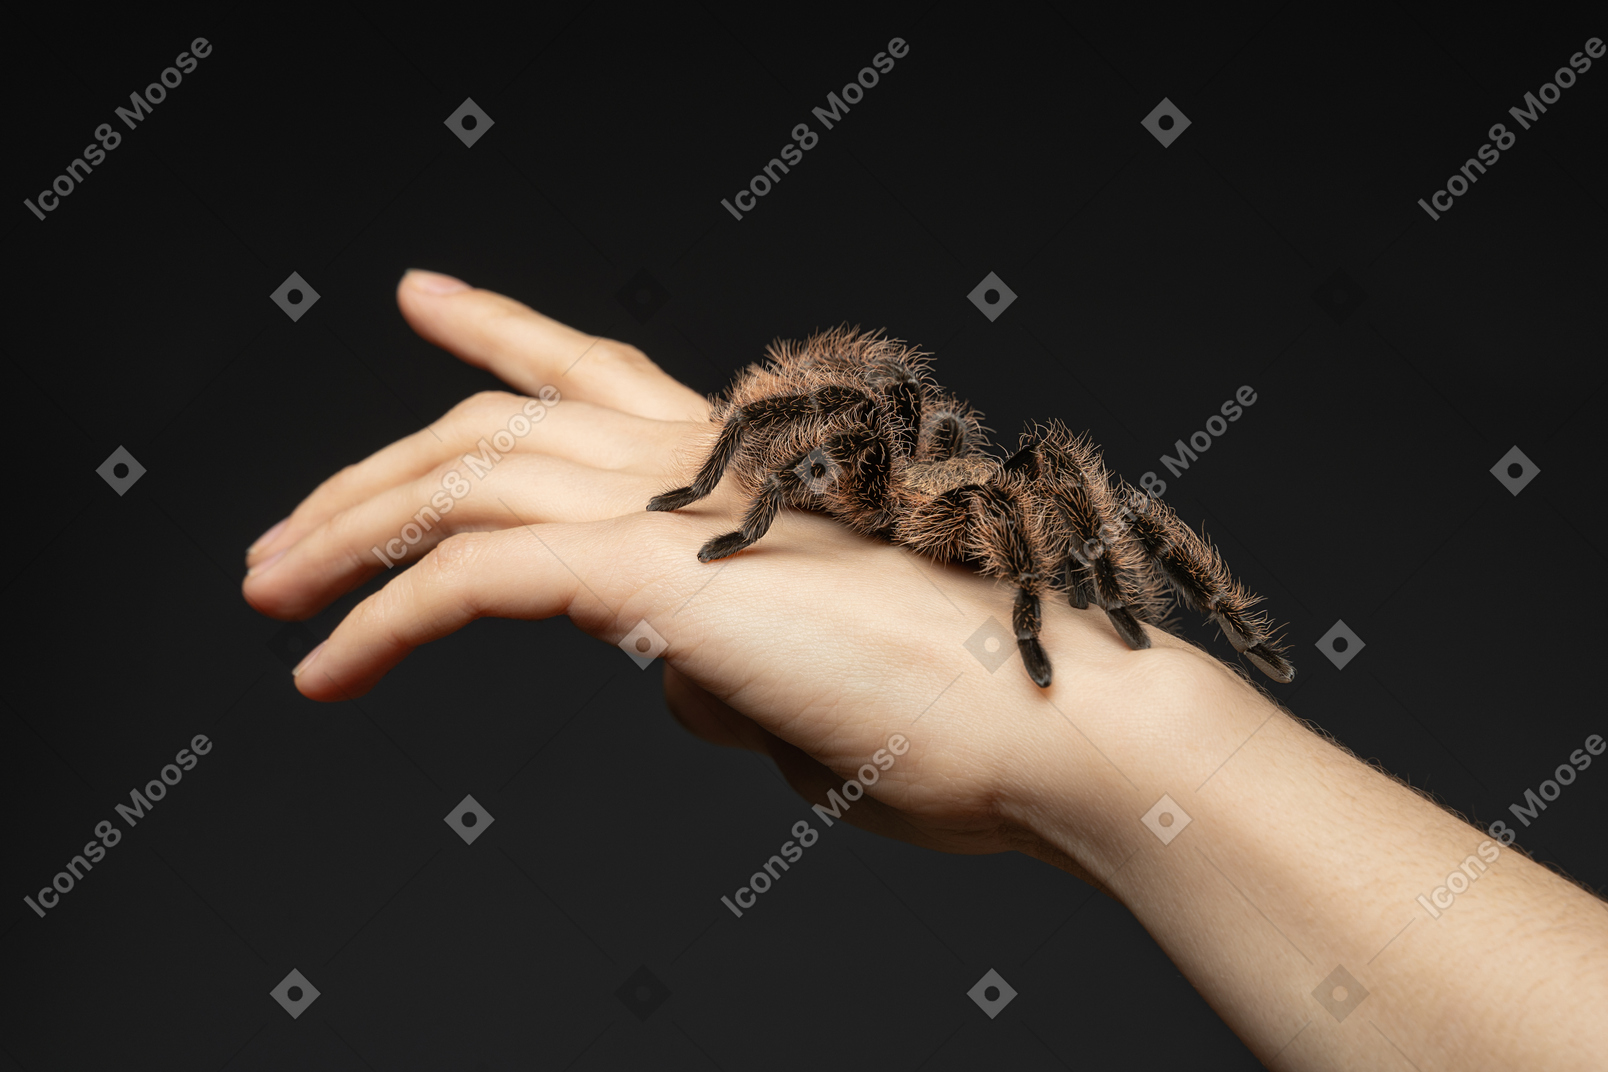 Araña en una mano humana